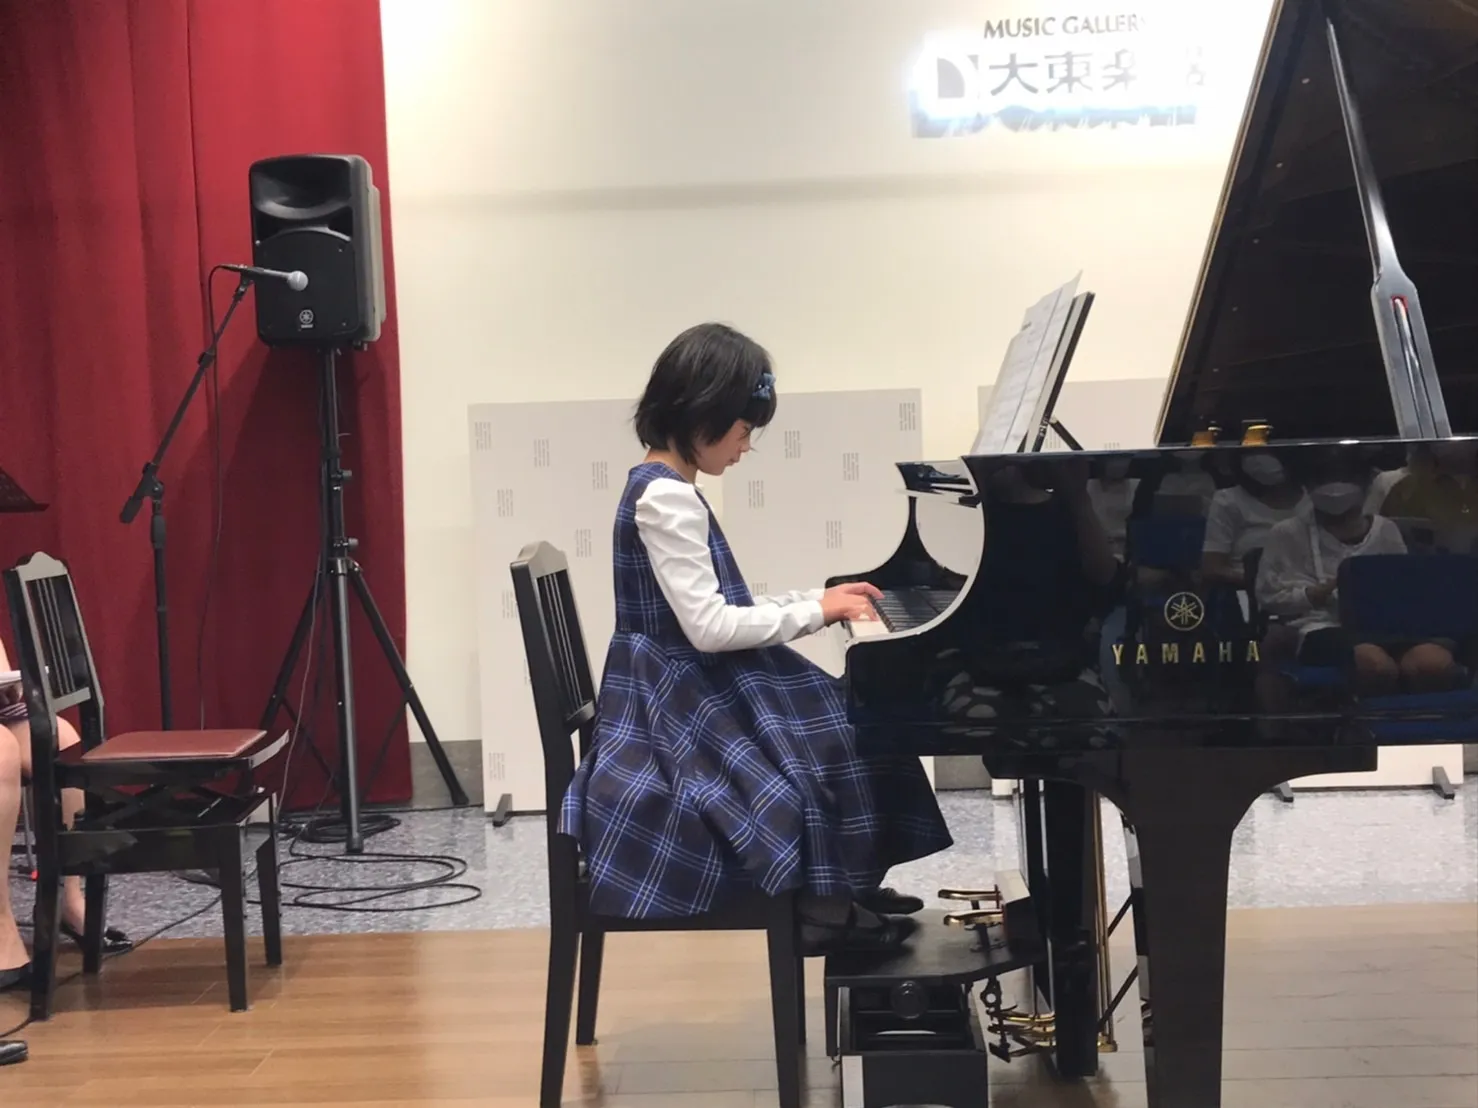 【都島】大人から子供のピアノ練習 ちょっとした豆知識 Vol.1🎵「効率的なピアノの練習法」